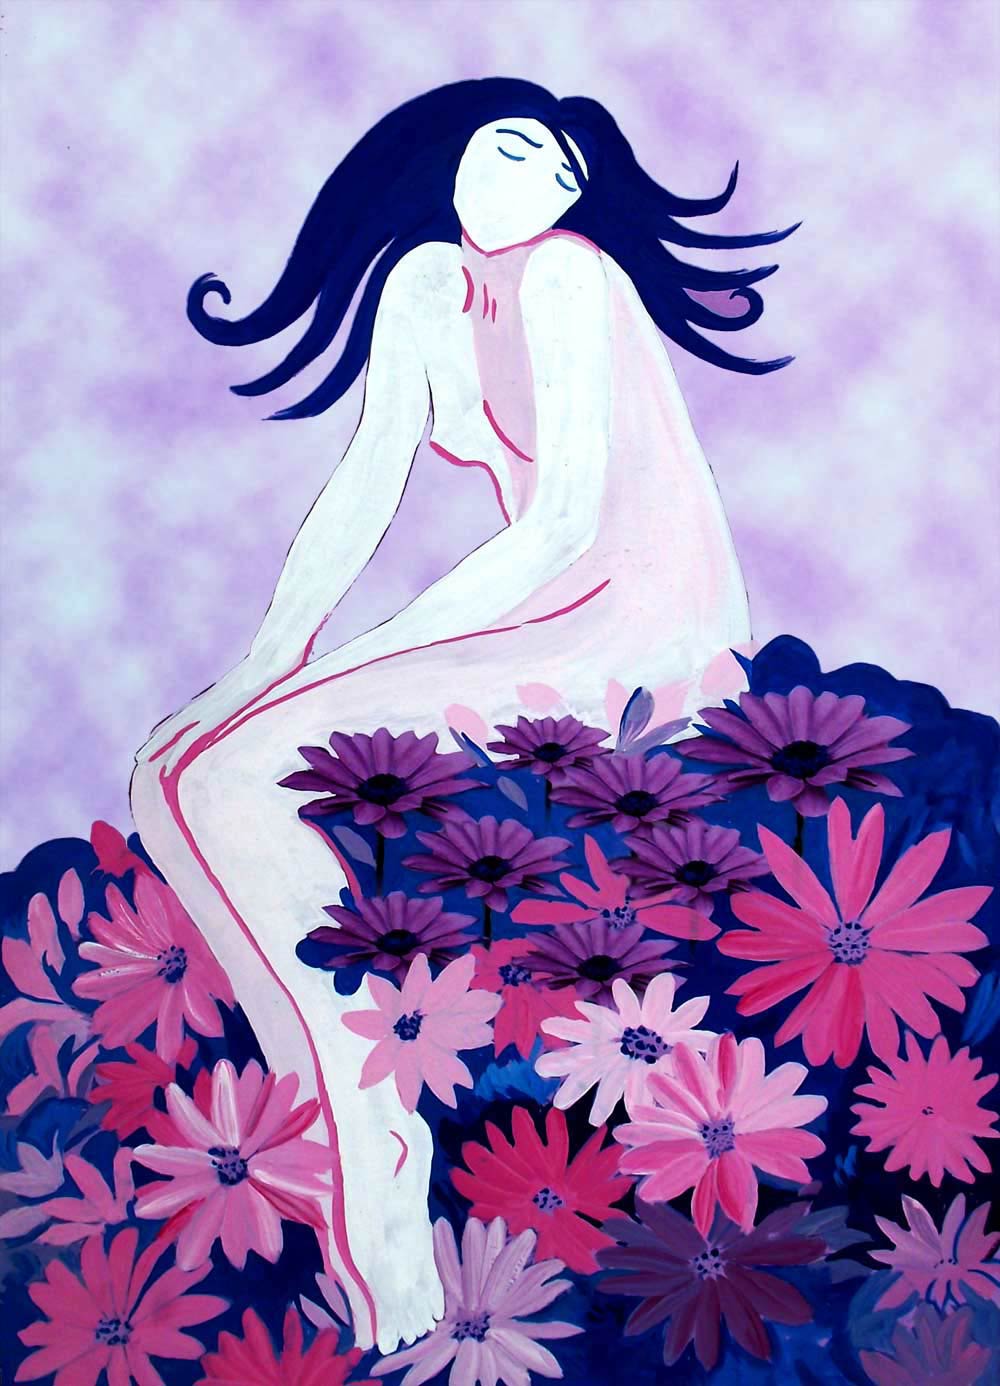 La ninfa de las flores, ilustración gratis